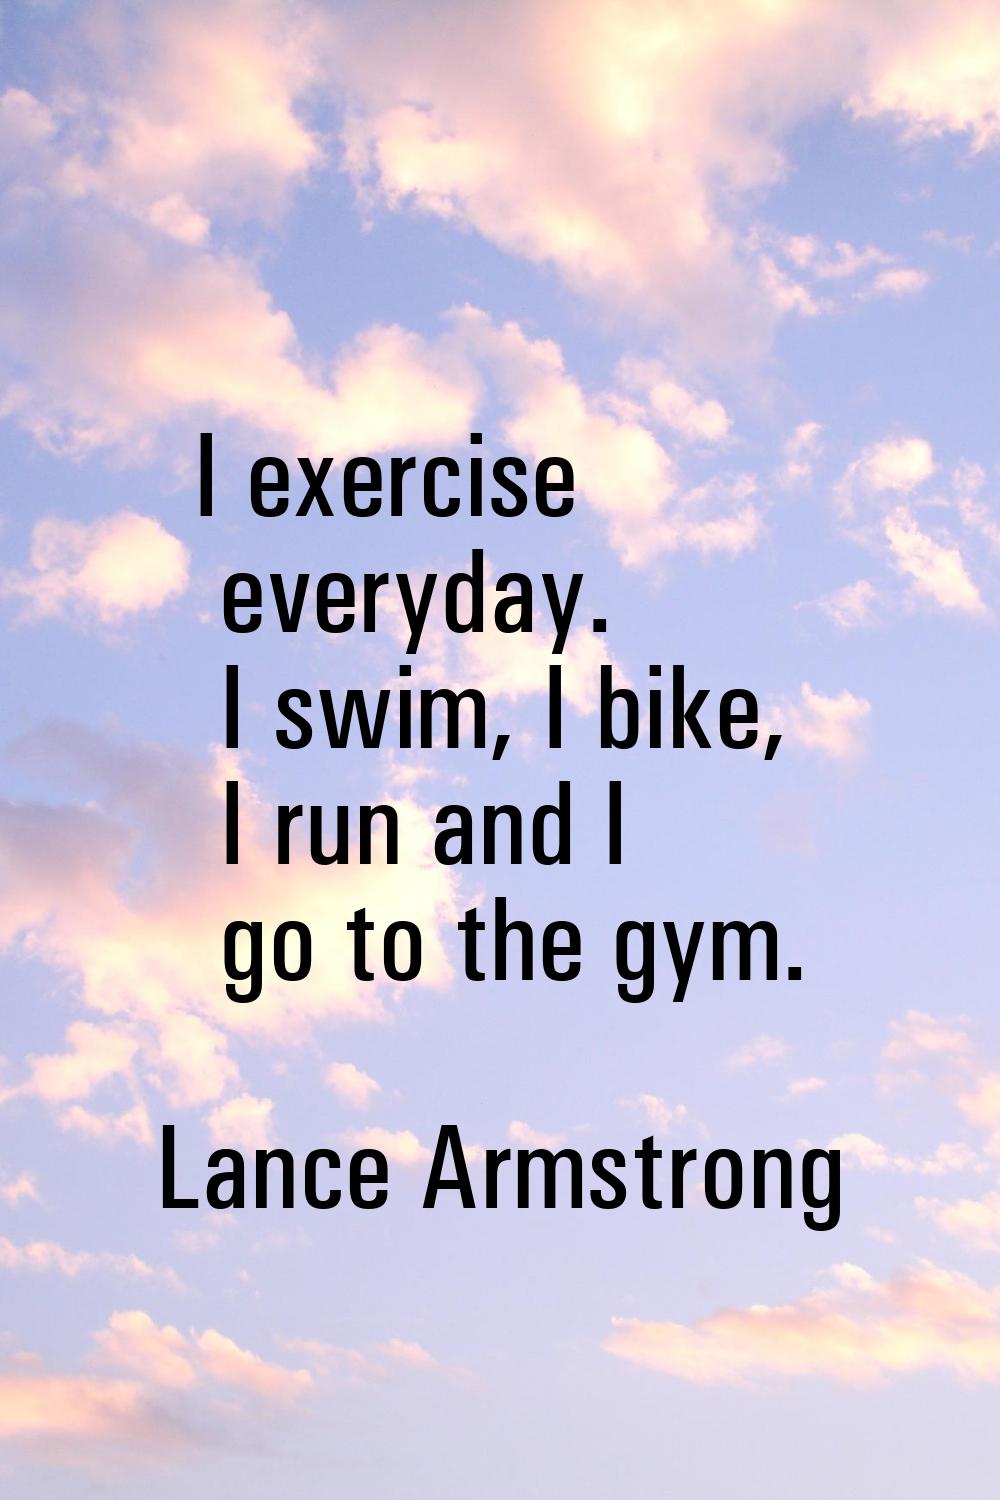 I exercise everyday. I swim, I bike, I run and I go to the gym.